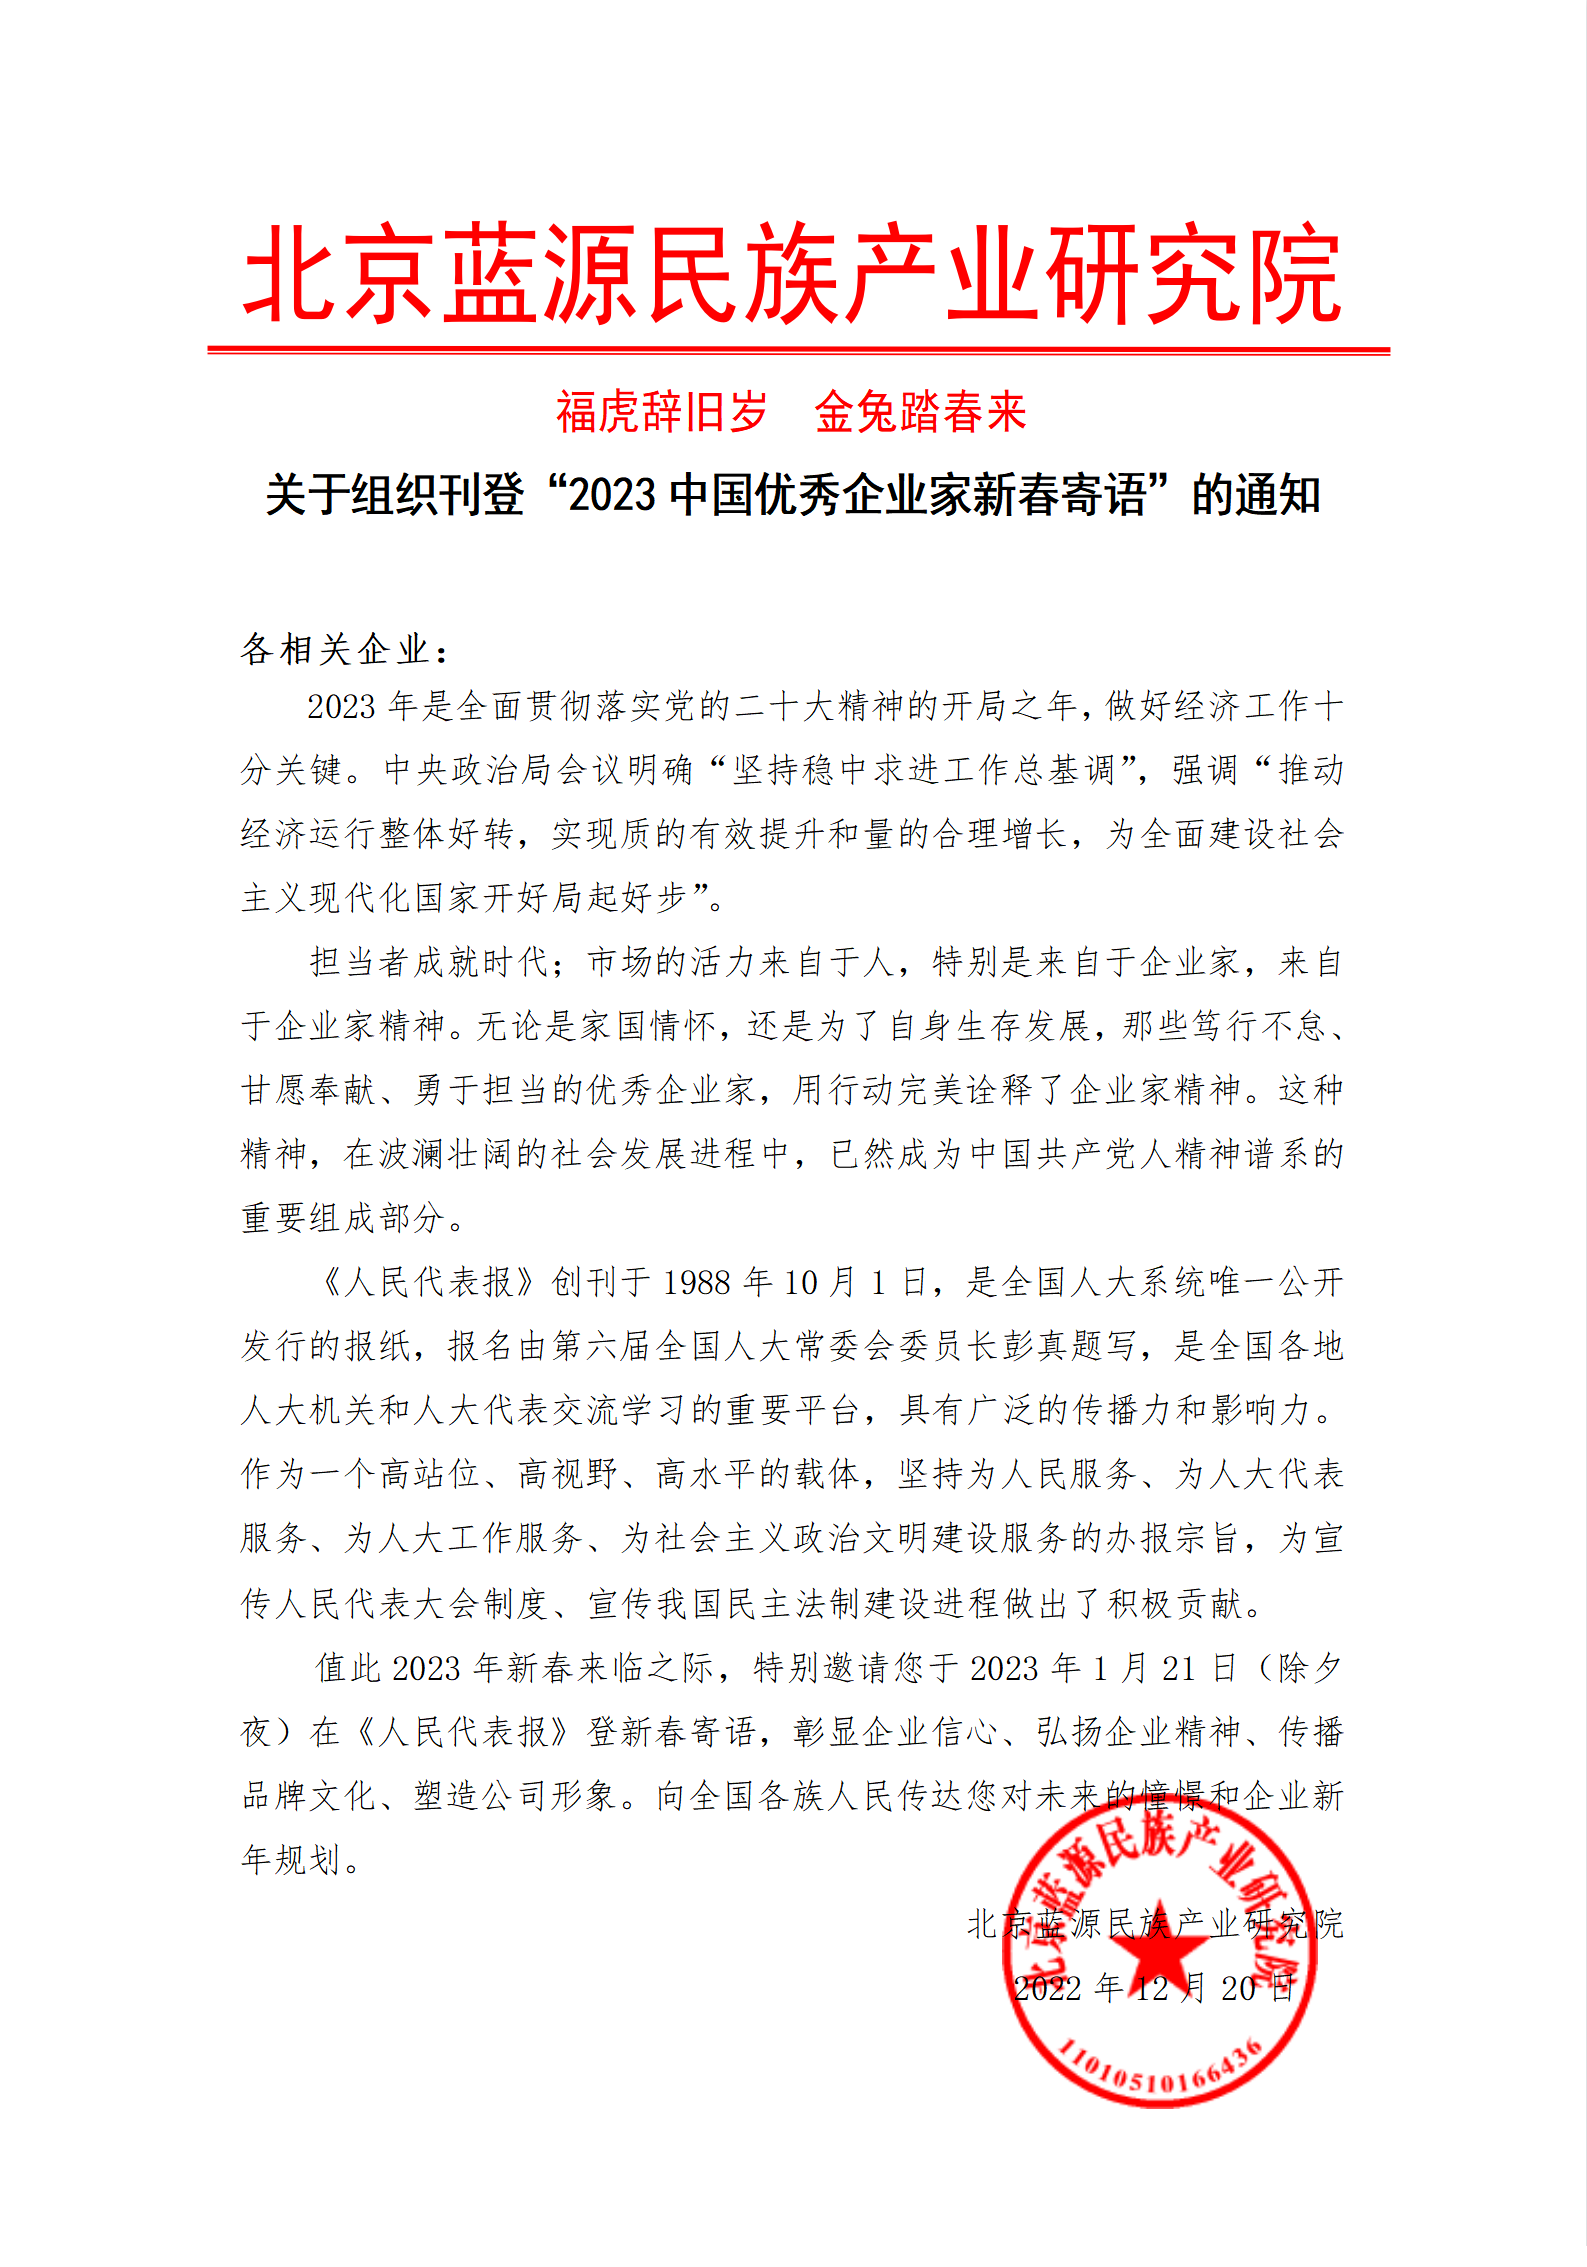 关于组织刊登2013中国优秀企业家新春寄语的通知